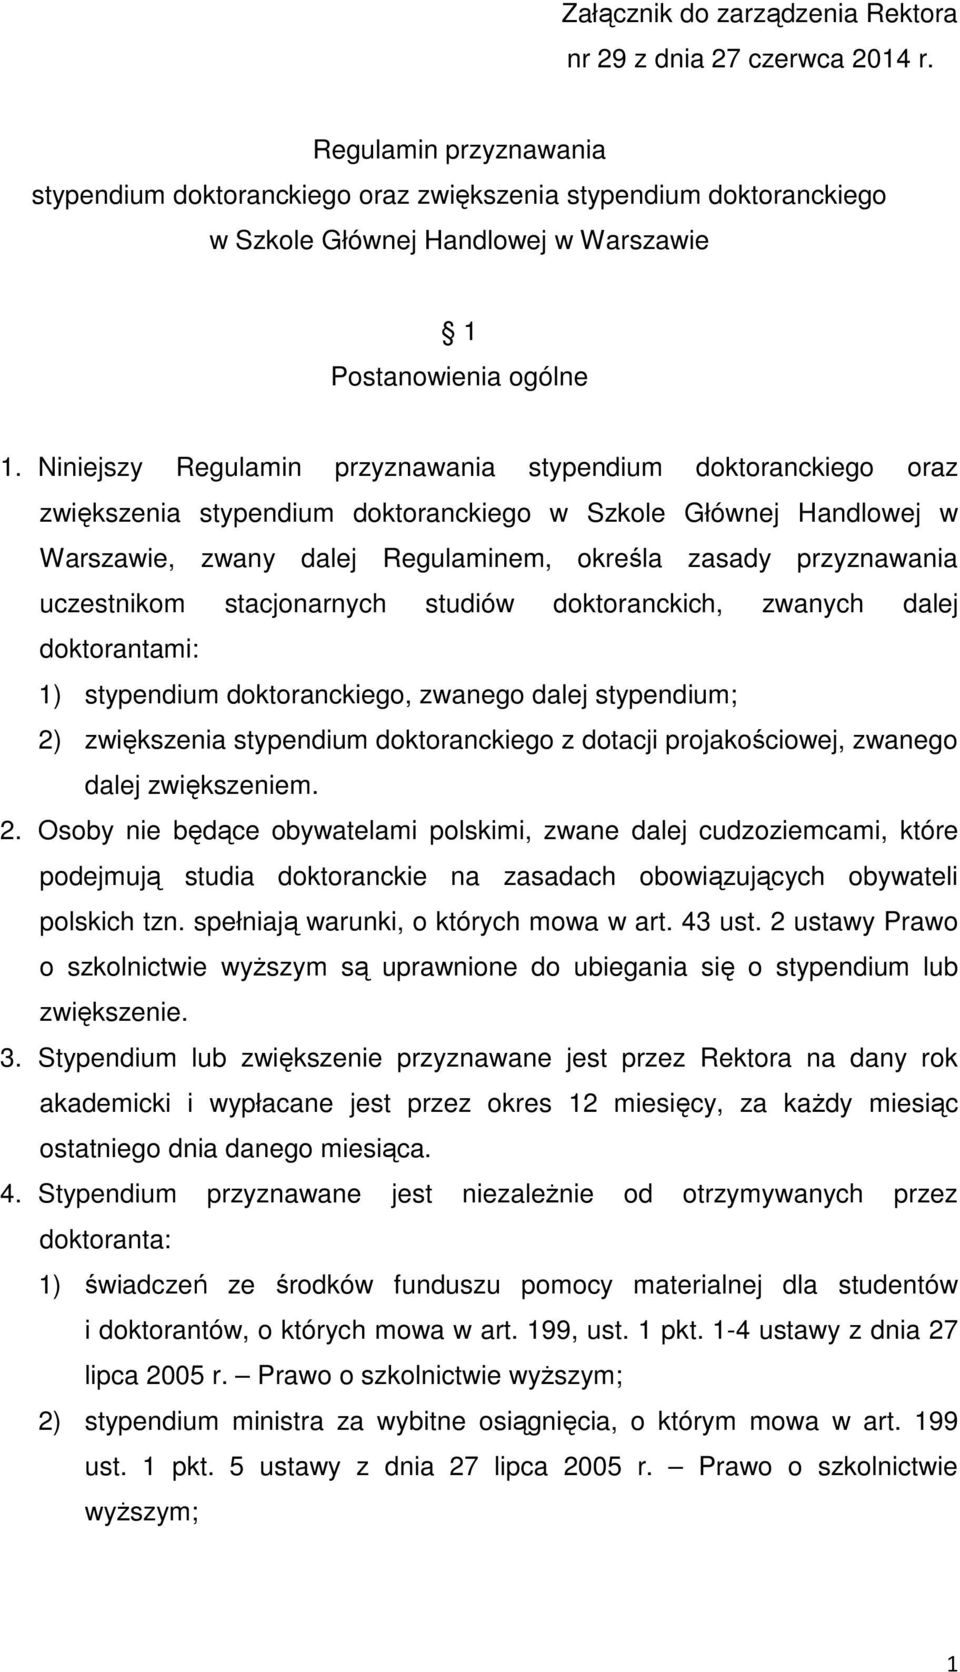 Niniejszy Regulamin przyznawania stypendium doktoranckiego oraz zwiększenia stypendium doktoranckiego w Szkole Głównej Handlowej w Warszawie, zwany dalej Regulaminem, określa zasady przyznawania